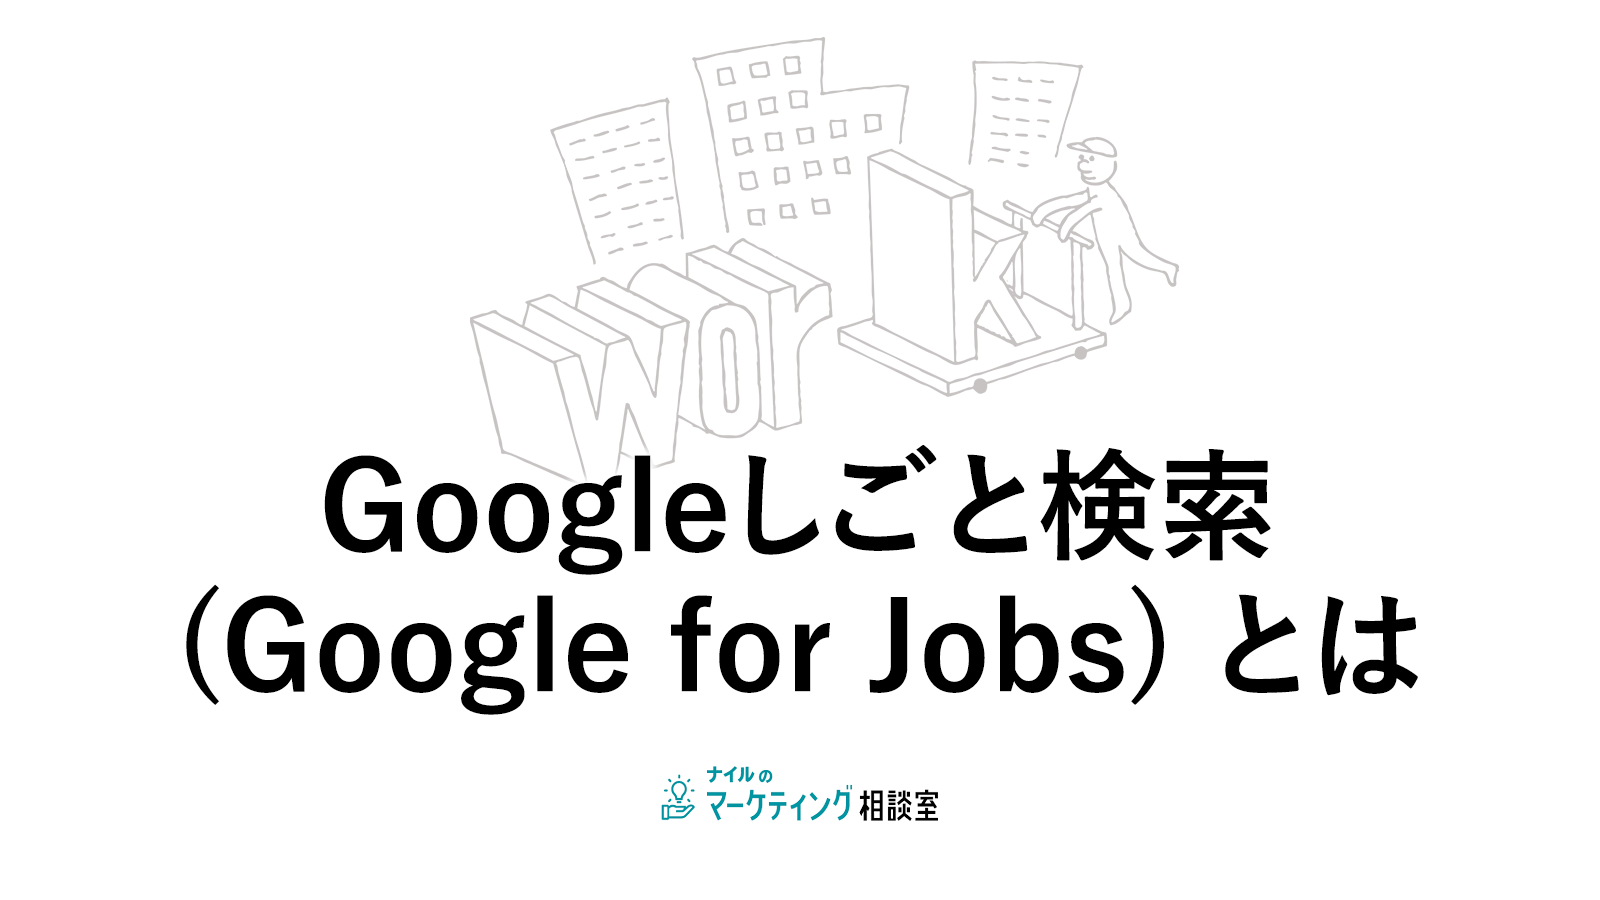 Googleしごと検索(Google for Jobs) とは